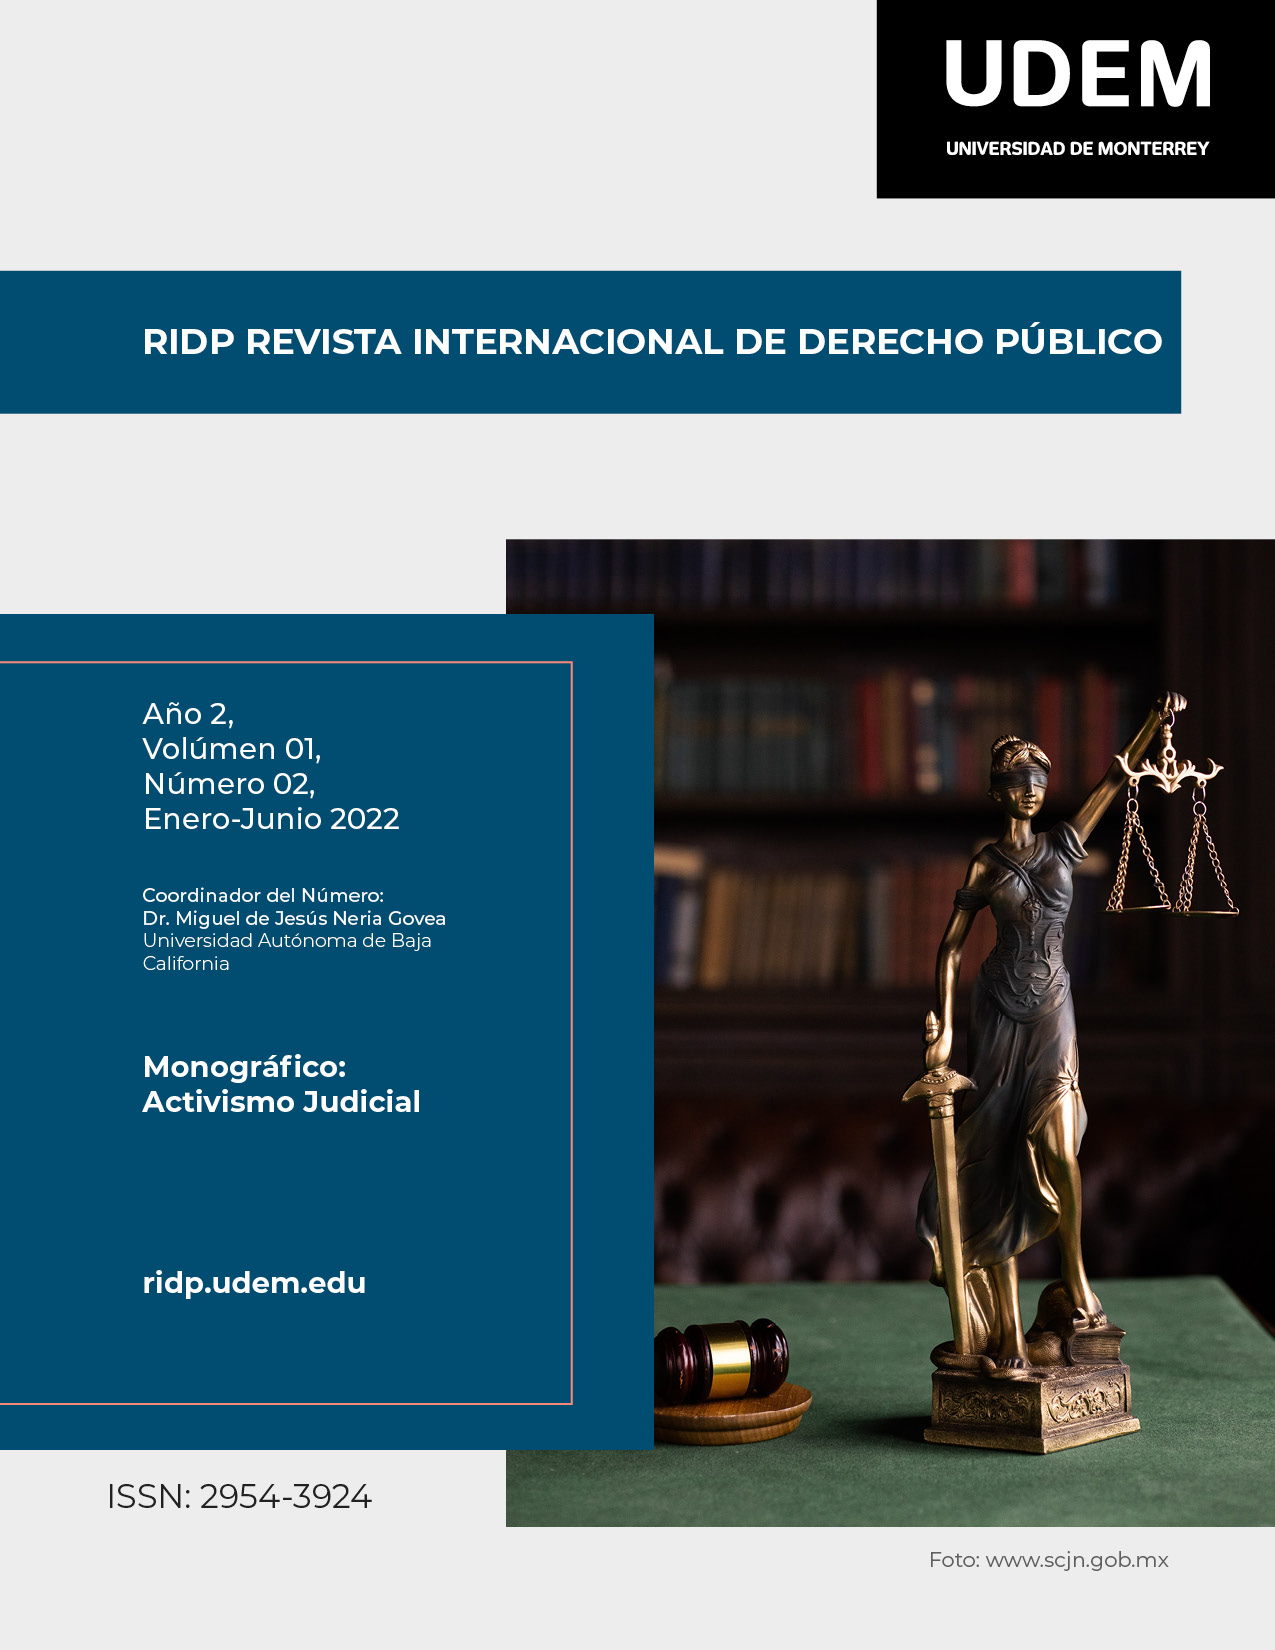 RIDP Revista Internacional de Derecho Público. Monográfico: Activismo Judicial. Núm. 02, Enero-Junio 2022